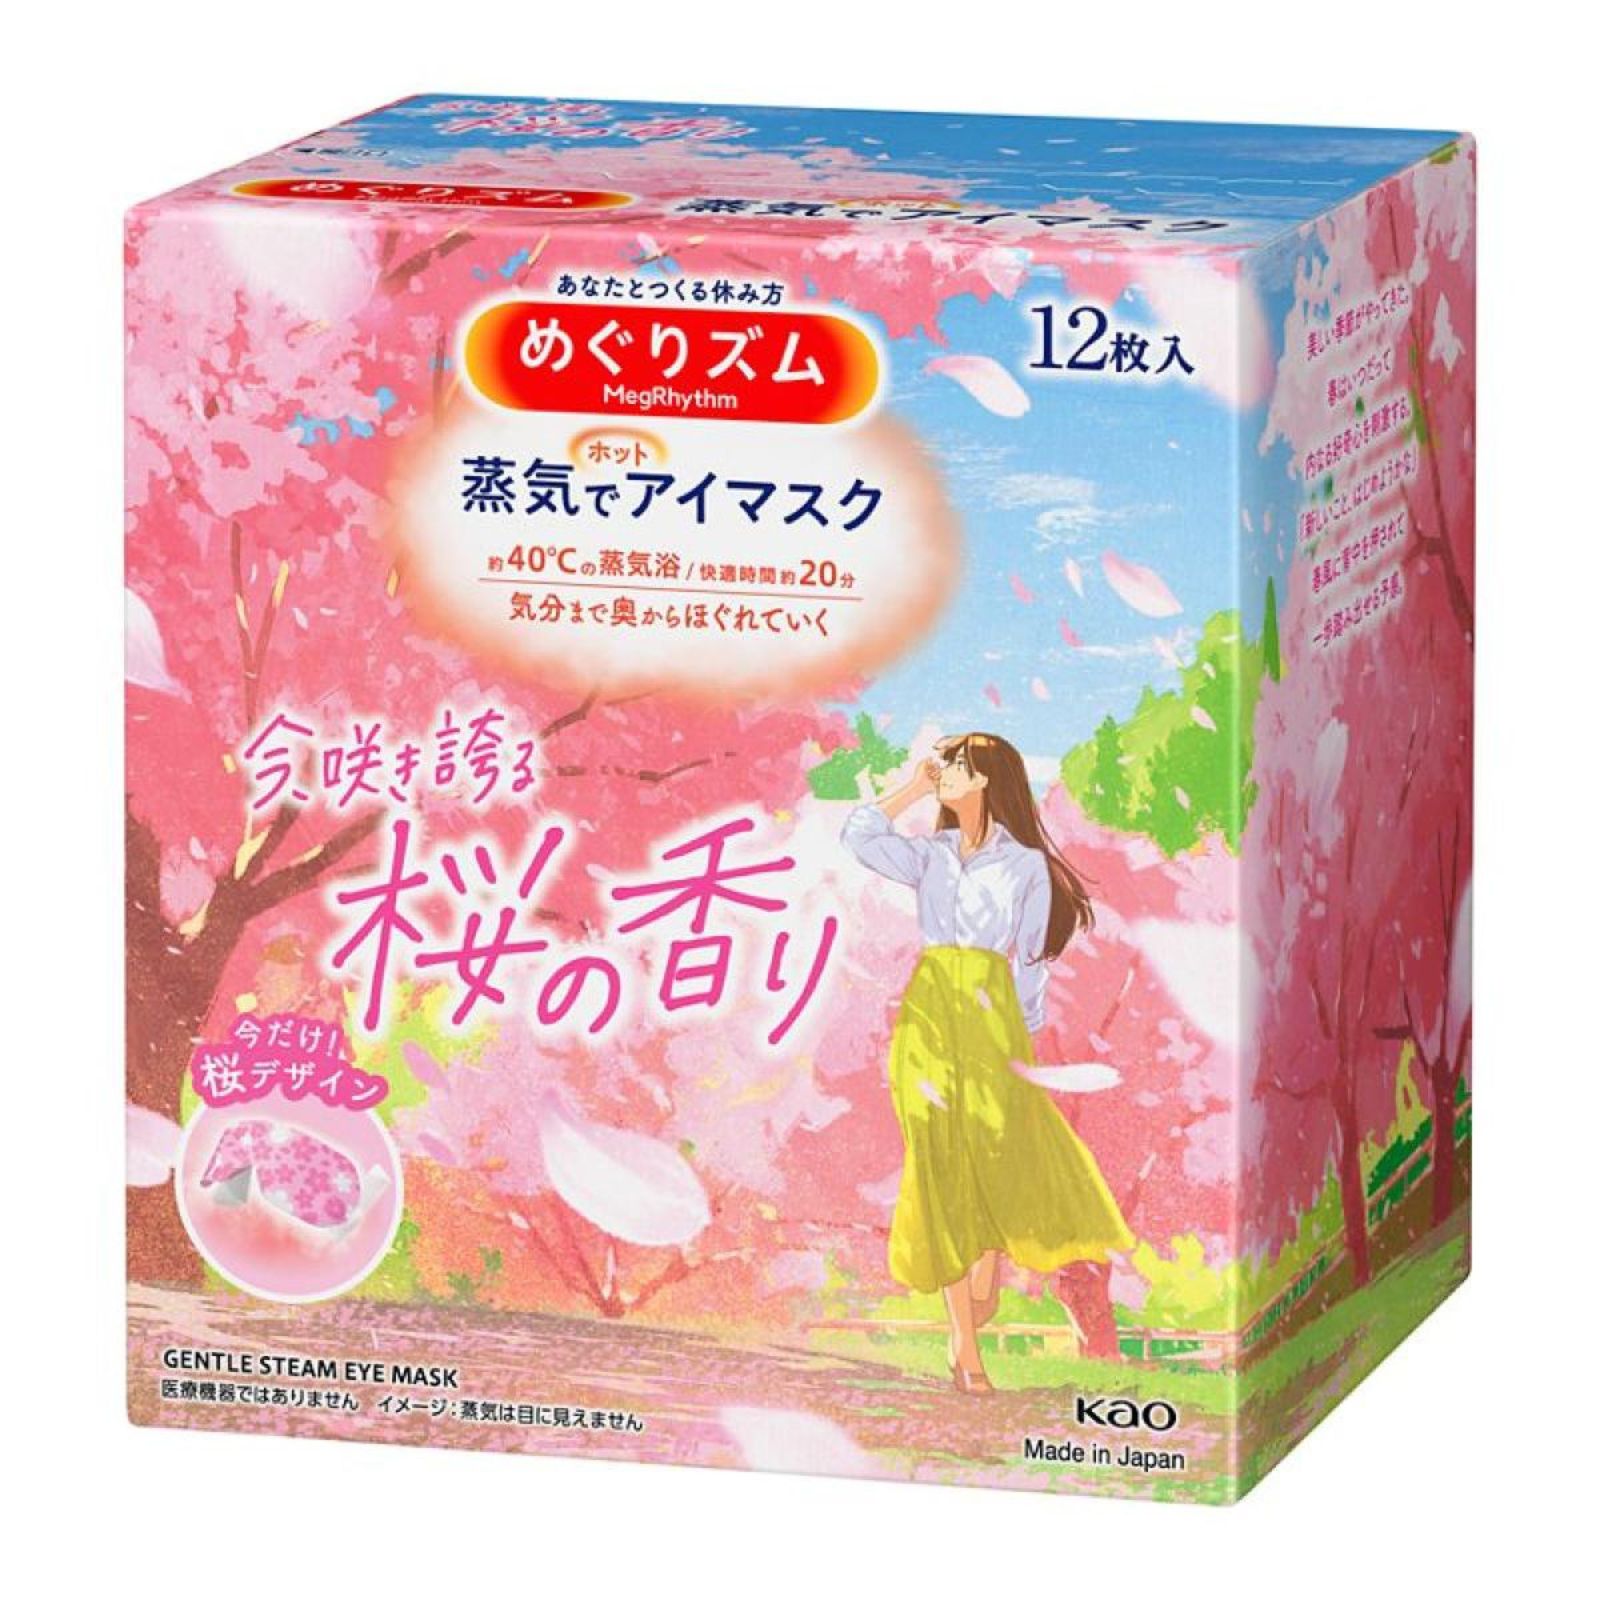 花王 めぐりズム 蒸気でホットアイマスク 桜の香り 12枚入 数量限定